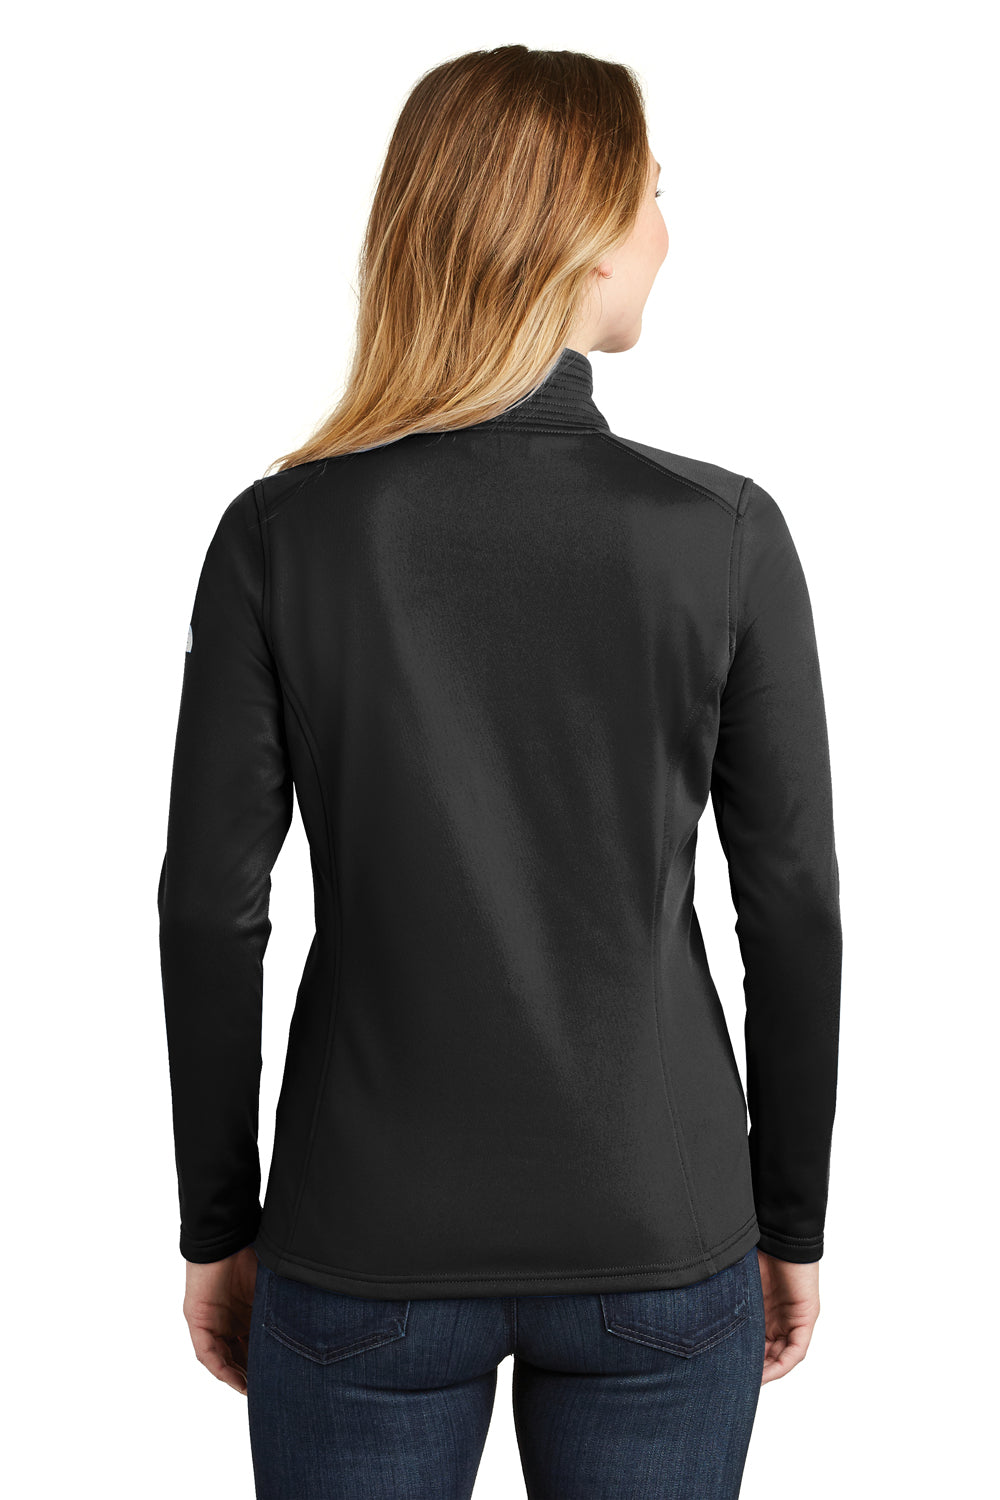 The North Face NF0A3LHC Womens Tech 1/4 Zip Fleece Jacket Black Back